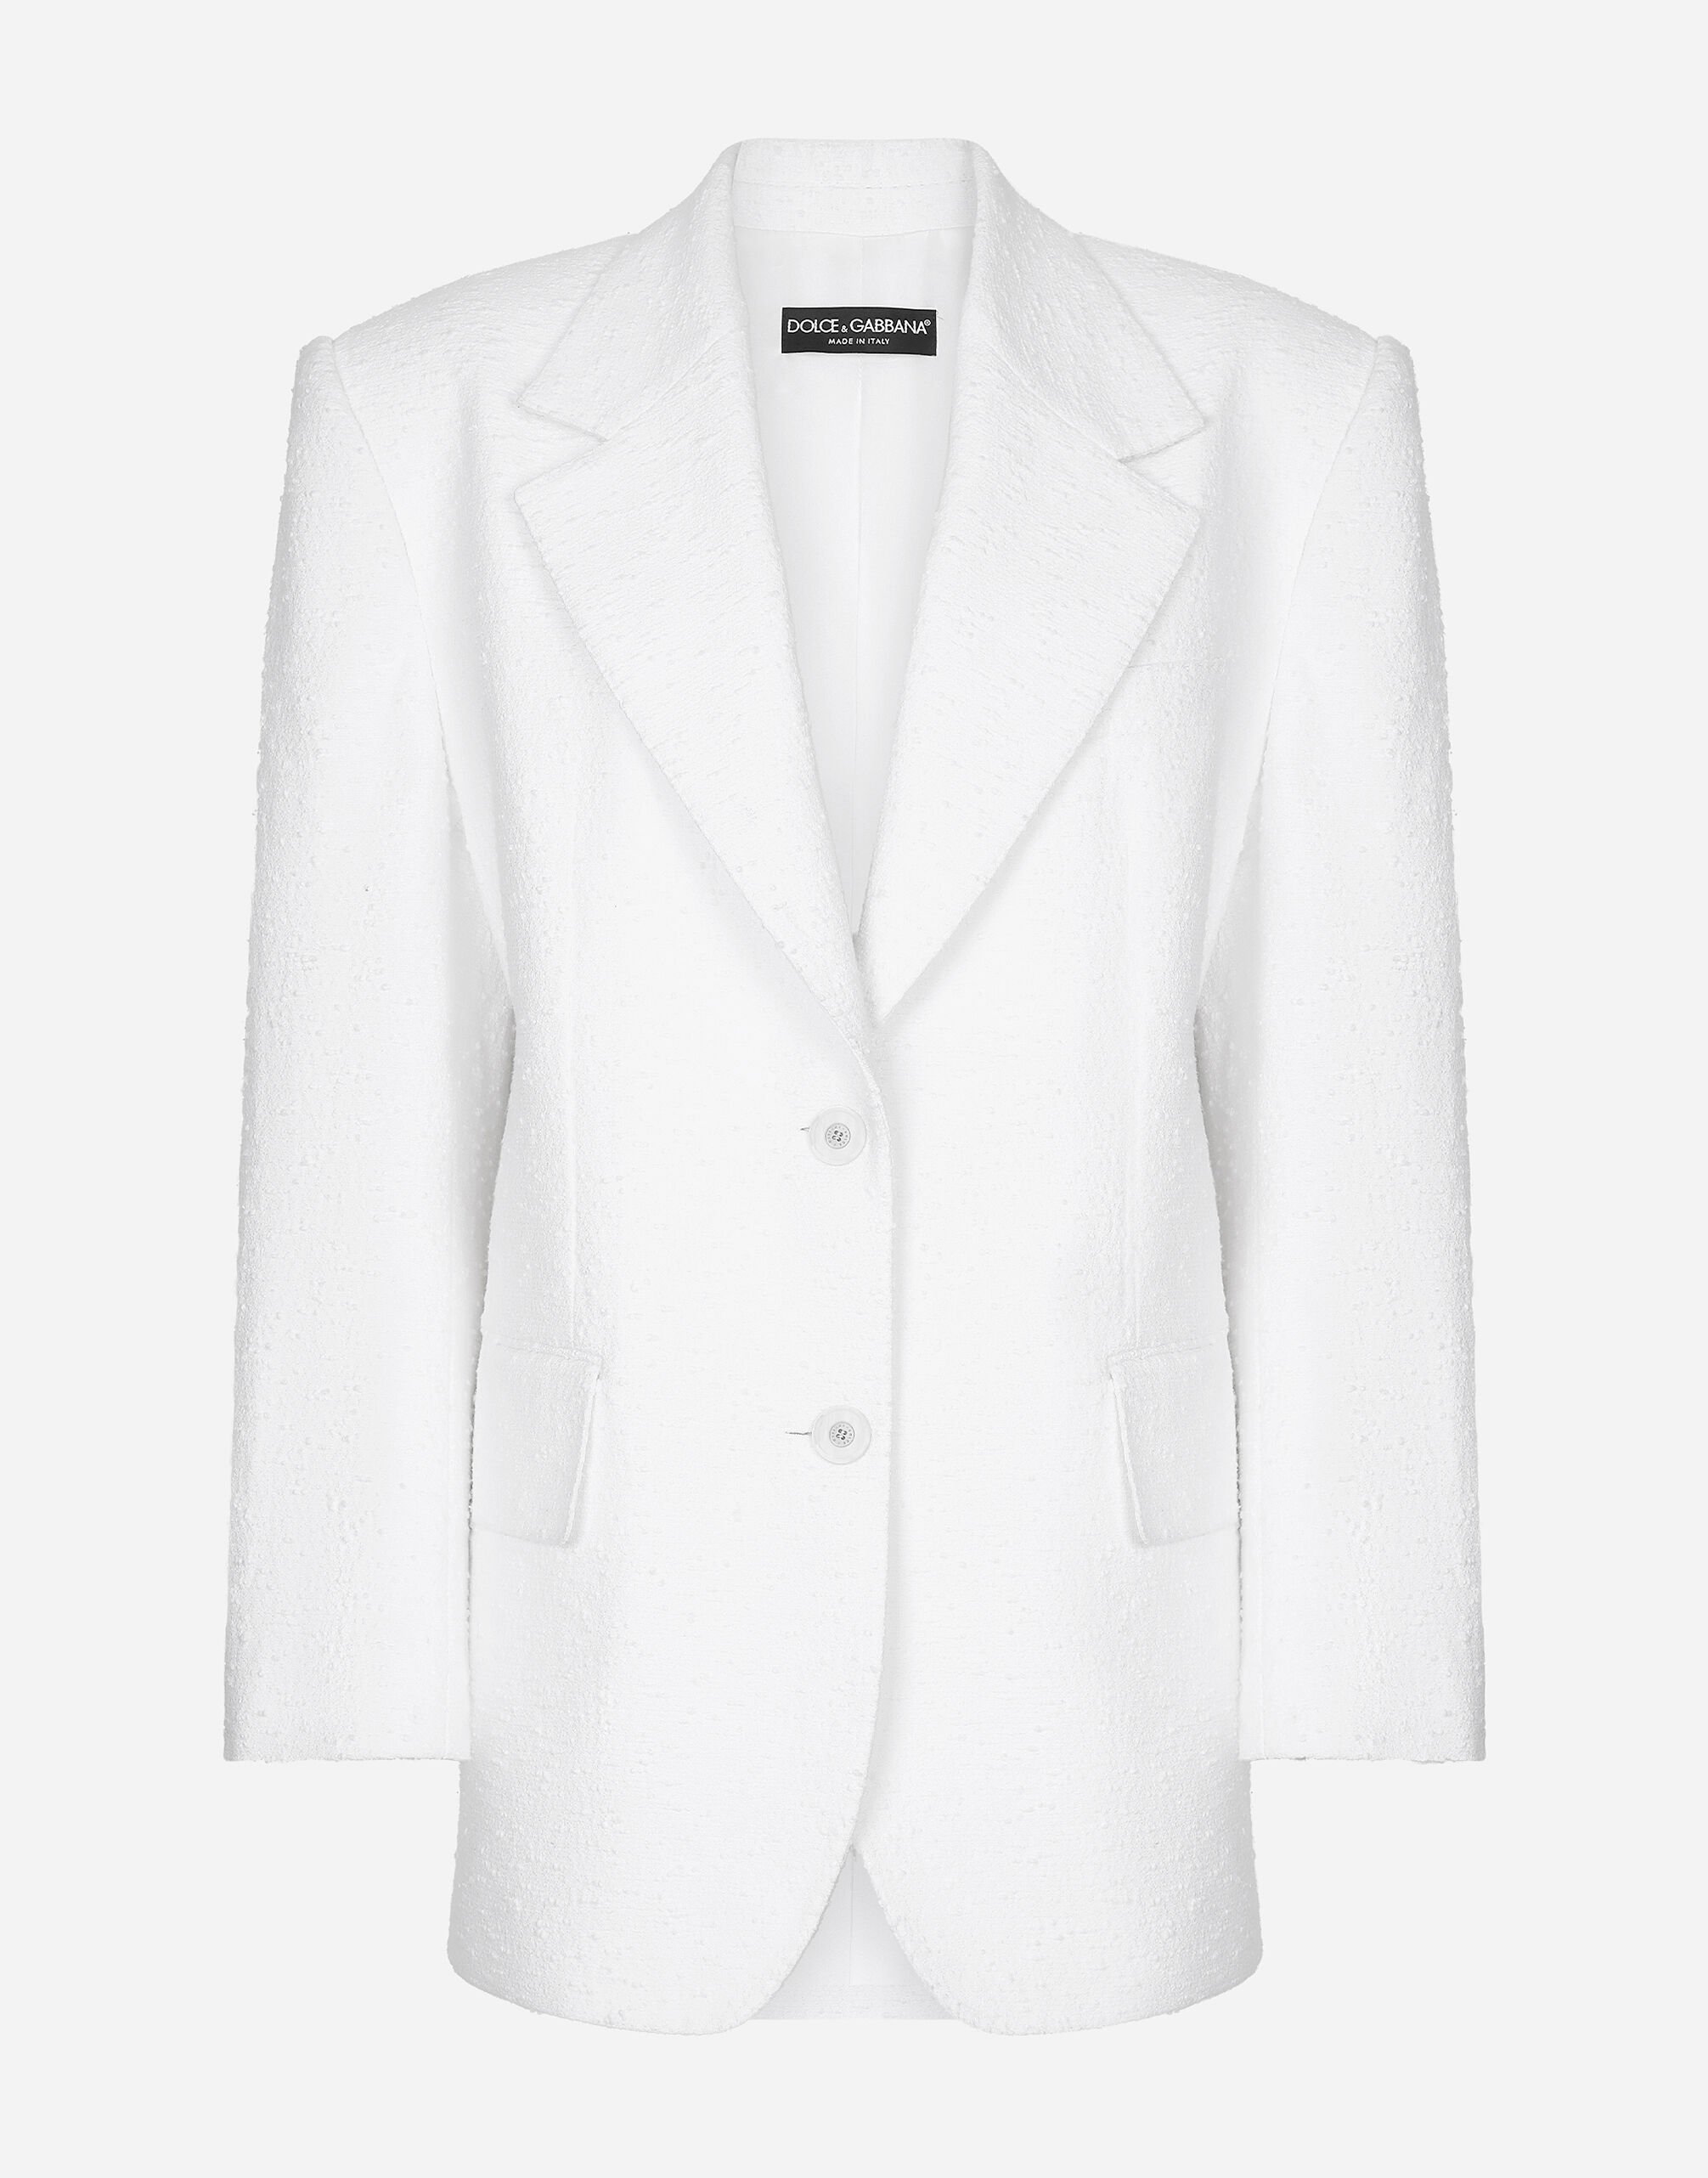 Dolce & Gabbana Chaqueta en tweed raschel de algodón con botonadura sencilla Blanco F29UCTFJTBV